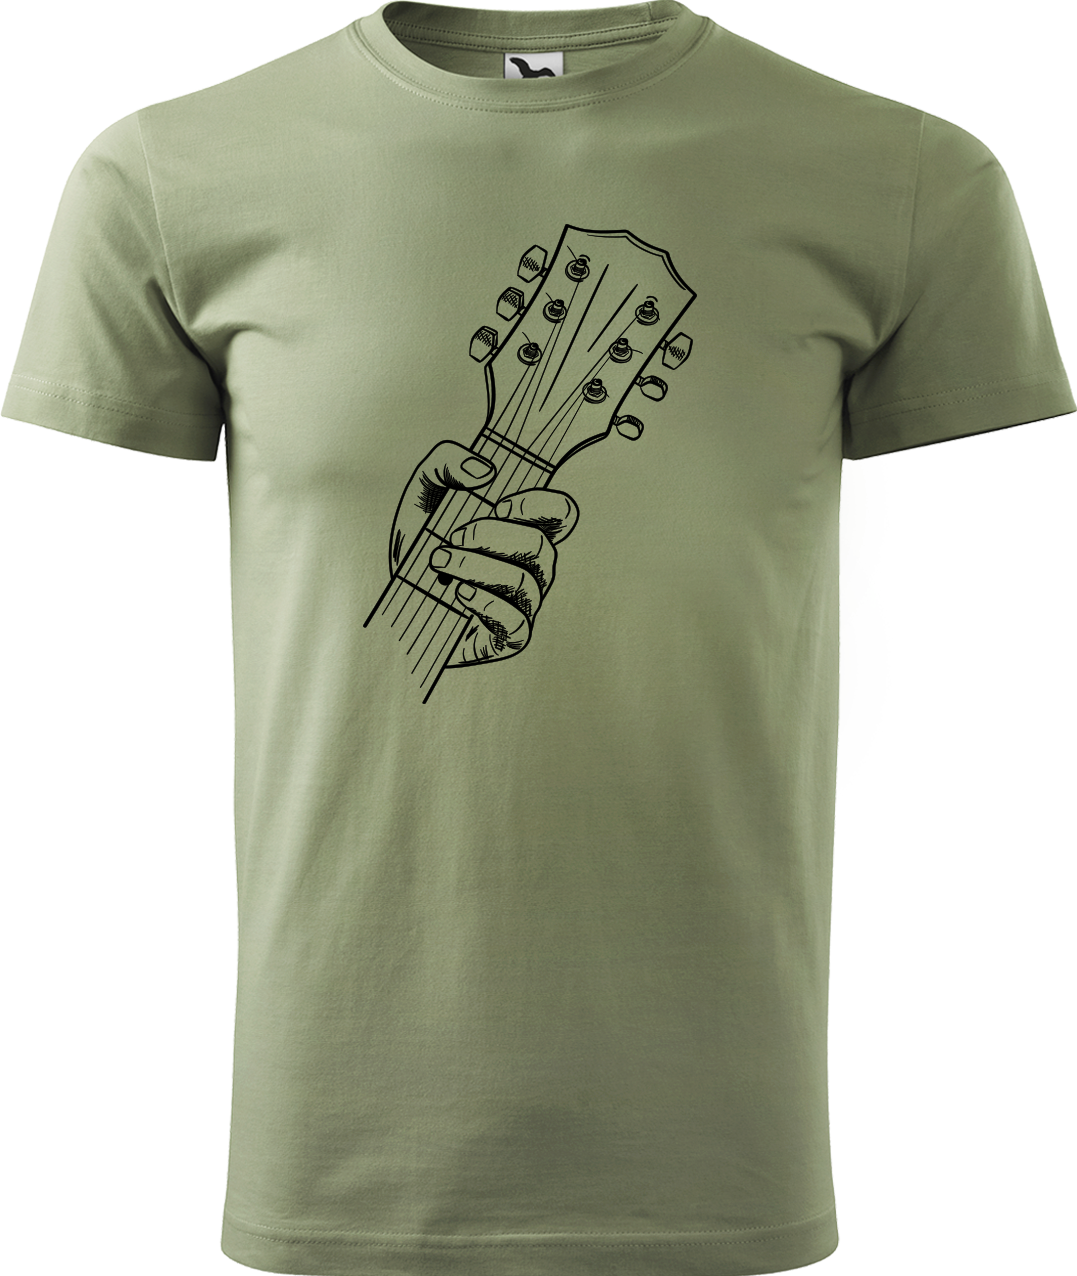 Pánské tričko s kytarou - Hlava kytary Velikost: 4XL, Barva: Světlá khaki (28)